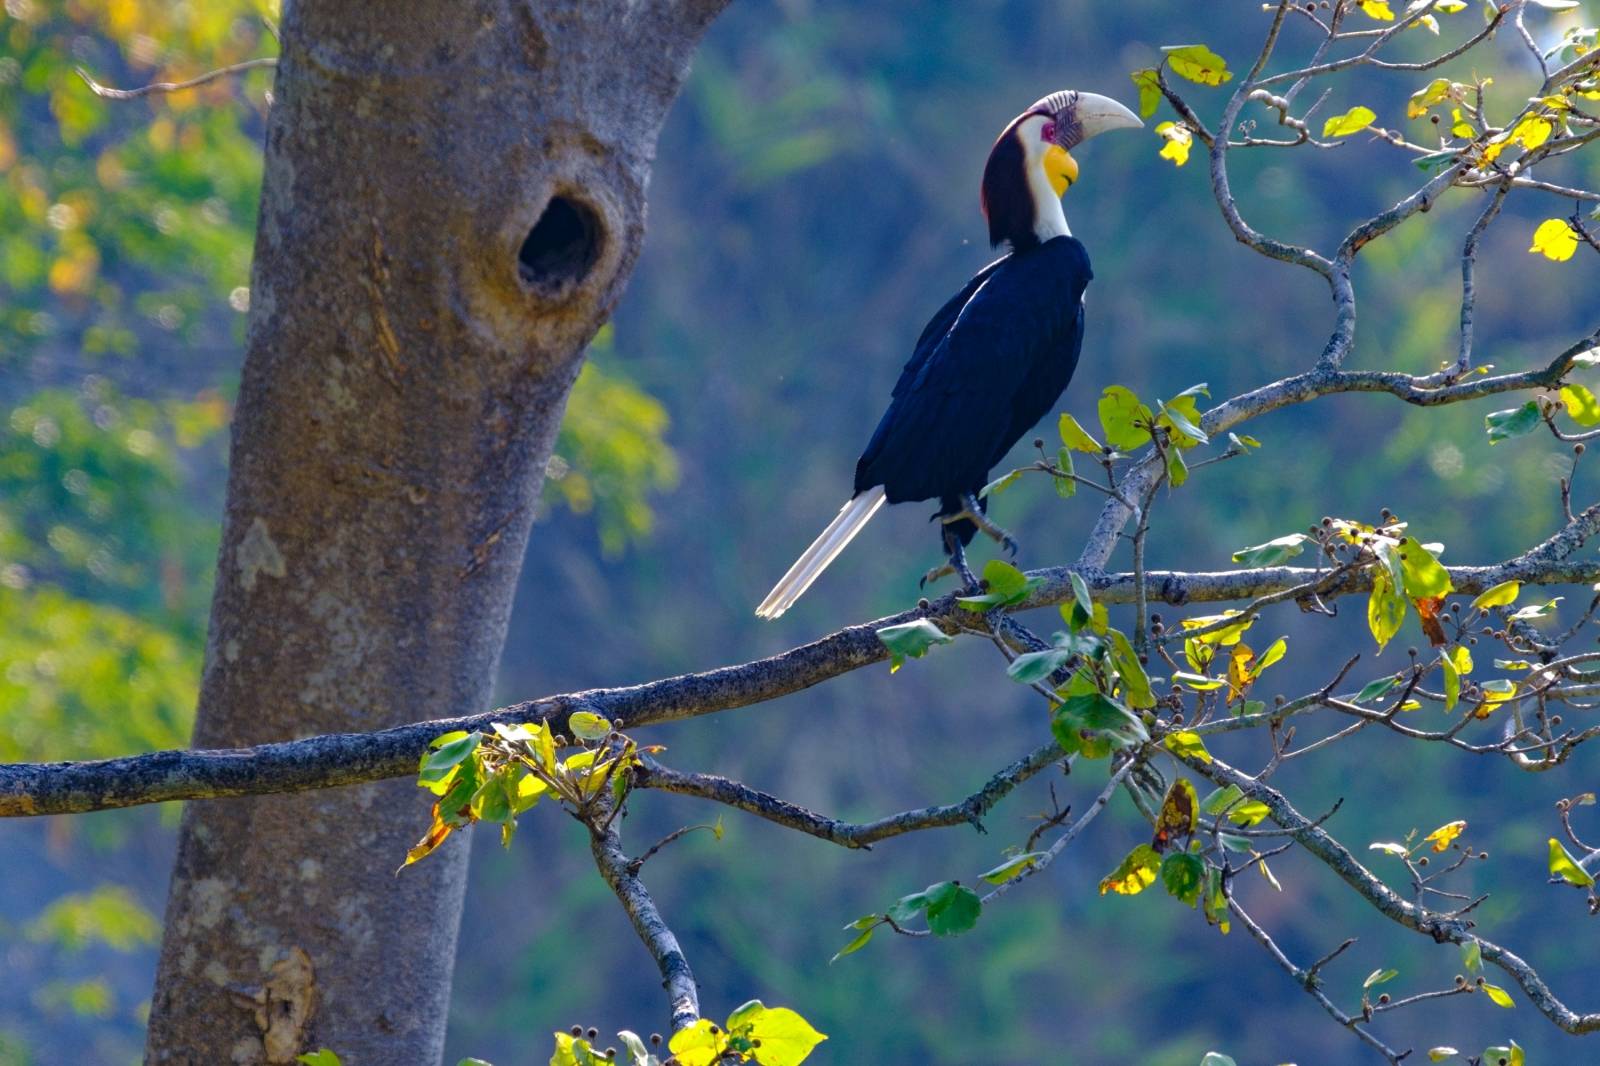 热带雨林常见鸟类图片